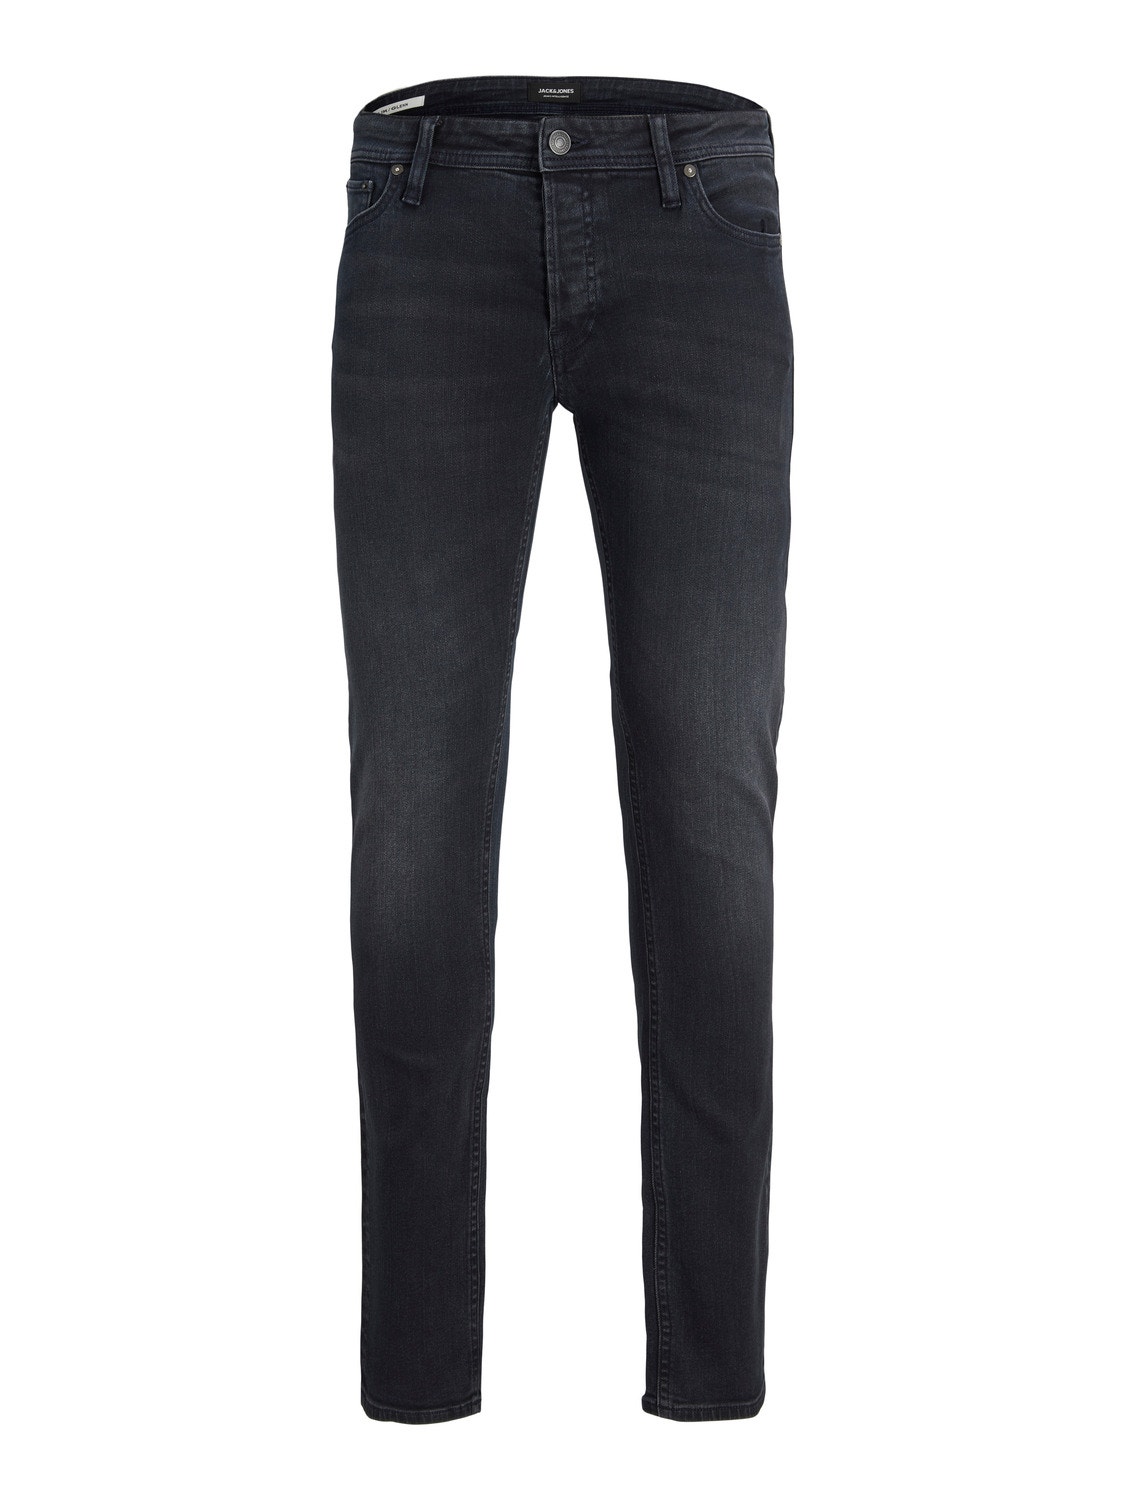 Jack & Jones JJIWHLIAM JJORIGINAL MF 106 Skinny fit jeans -Black Denim - 12218746